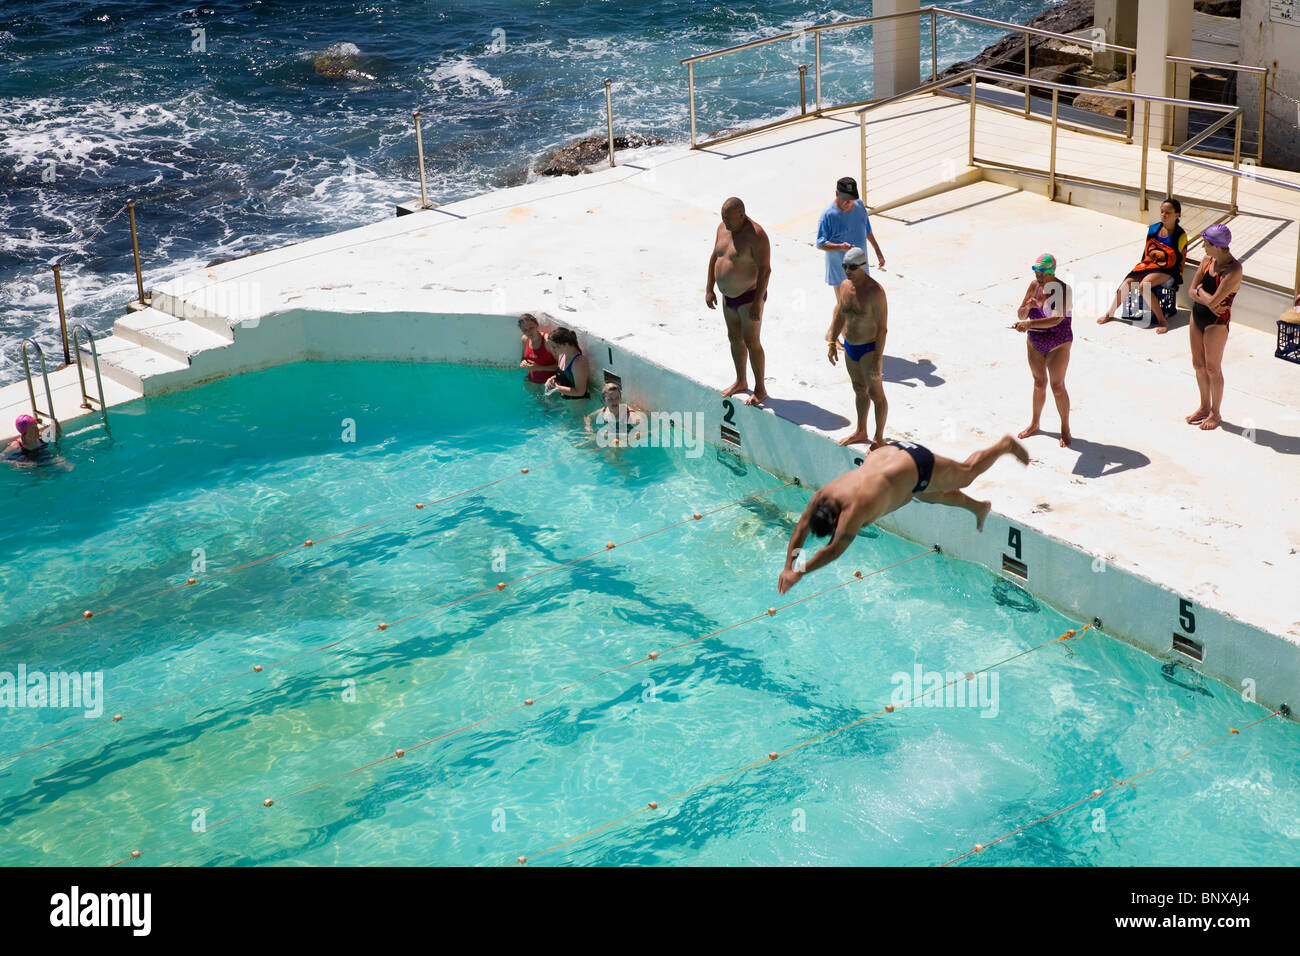 Les nageurs à la piscine Icebergs de Bondi, également connu sous le nom de thermes de Bondi. Bondi Beach, Sydney, New South Wales, Australia Banque D'Images